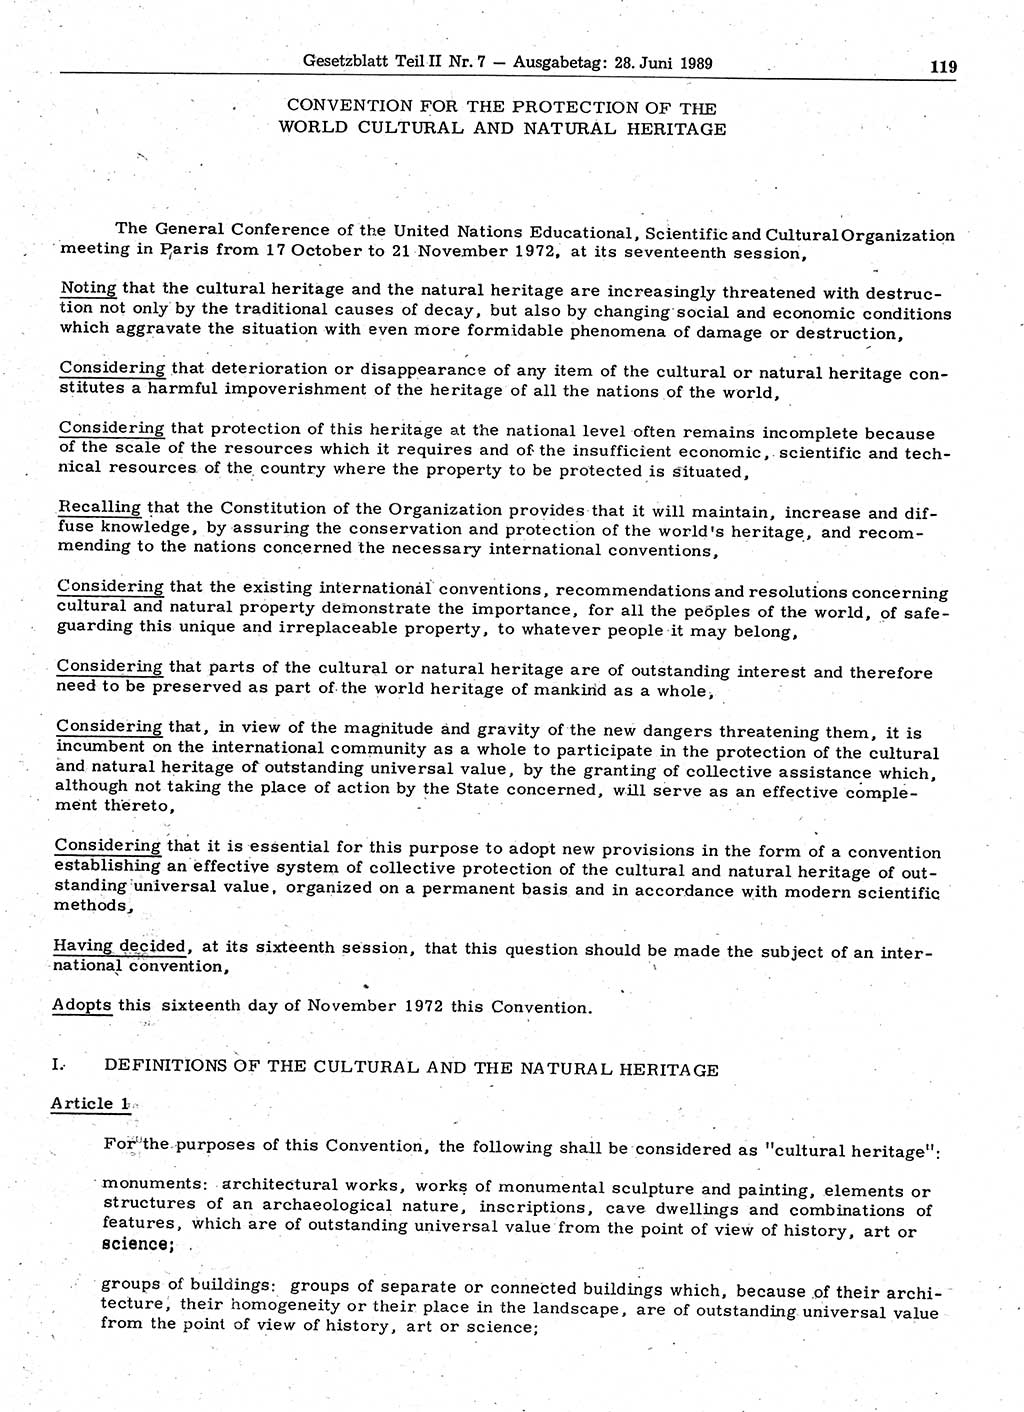 Gesetzblatt (GBl.) der Deutschen Demokratischen Republik (DDR) Teil ⅠⅠ 1989, Seite 119 (GBl. DDR ⅠⅠ 1989, S. 119)